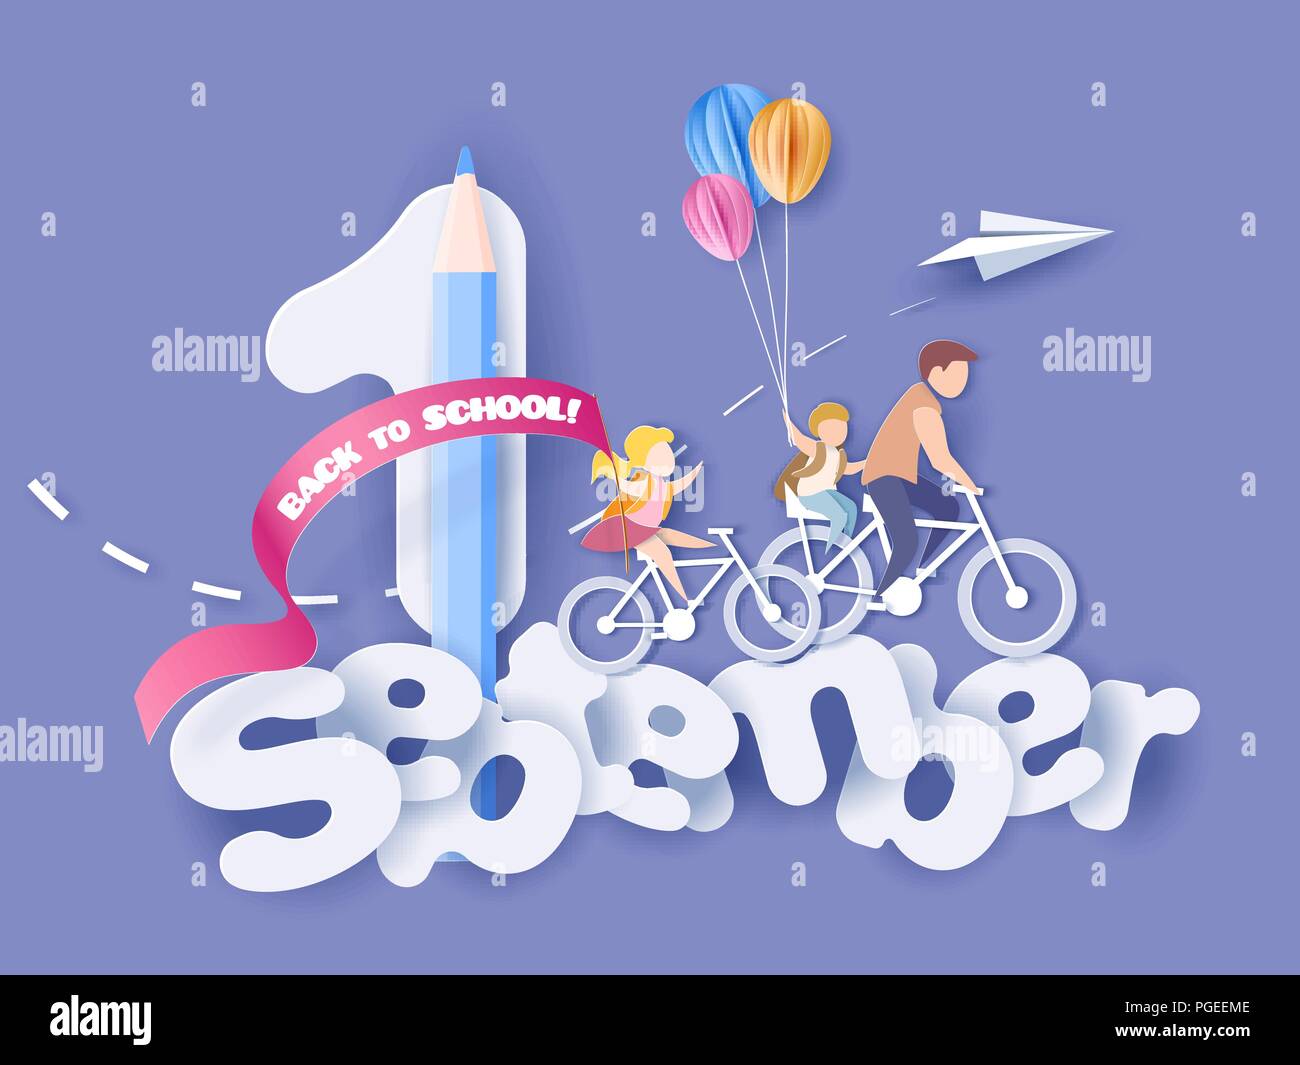 Si torna a scuola 1 settembre il card. I bambini in bicicletta con palloncini d'aria. Carta tagliata stile. Illustrazione Vettoriale Illustrazione Vettoriale